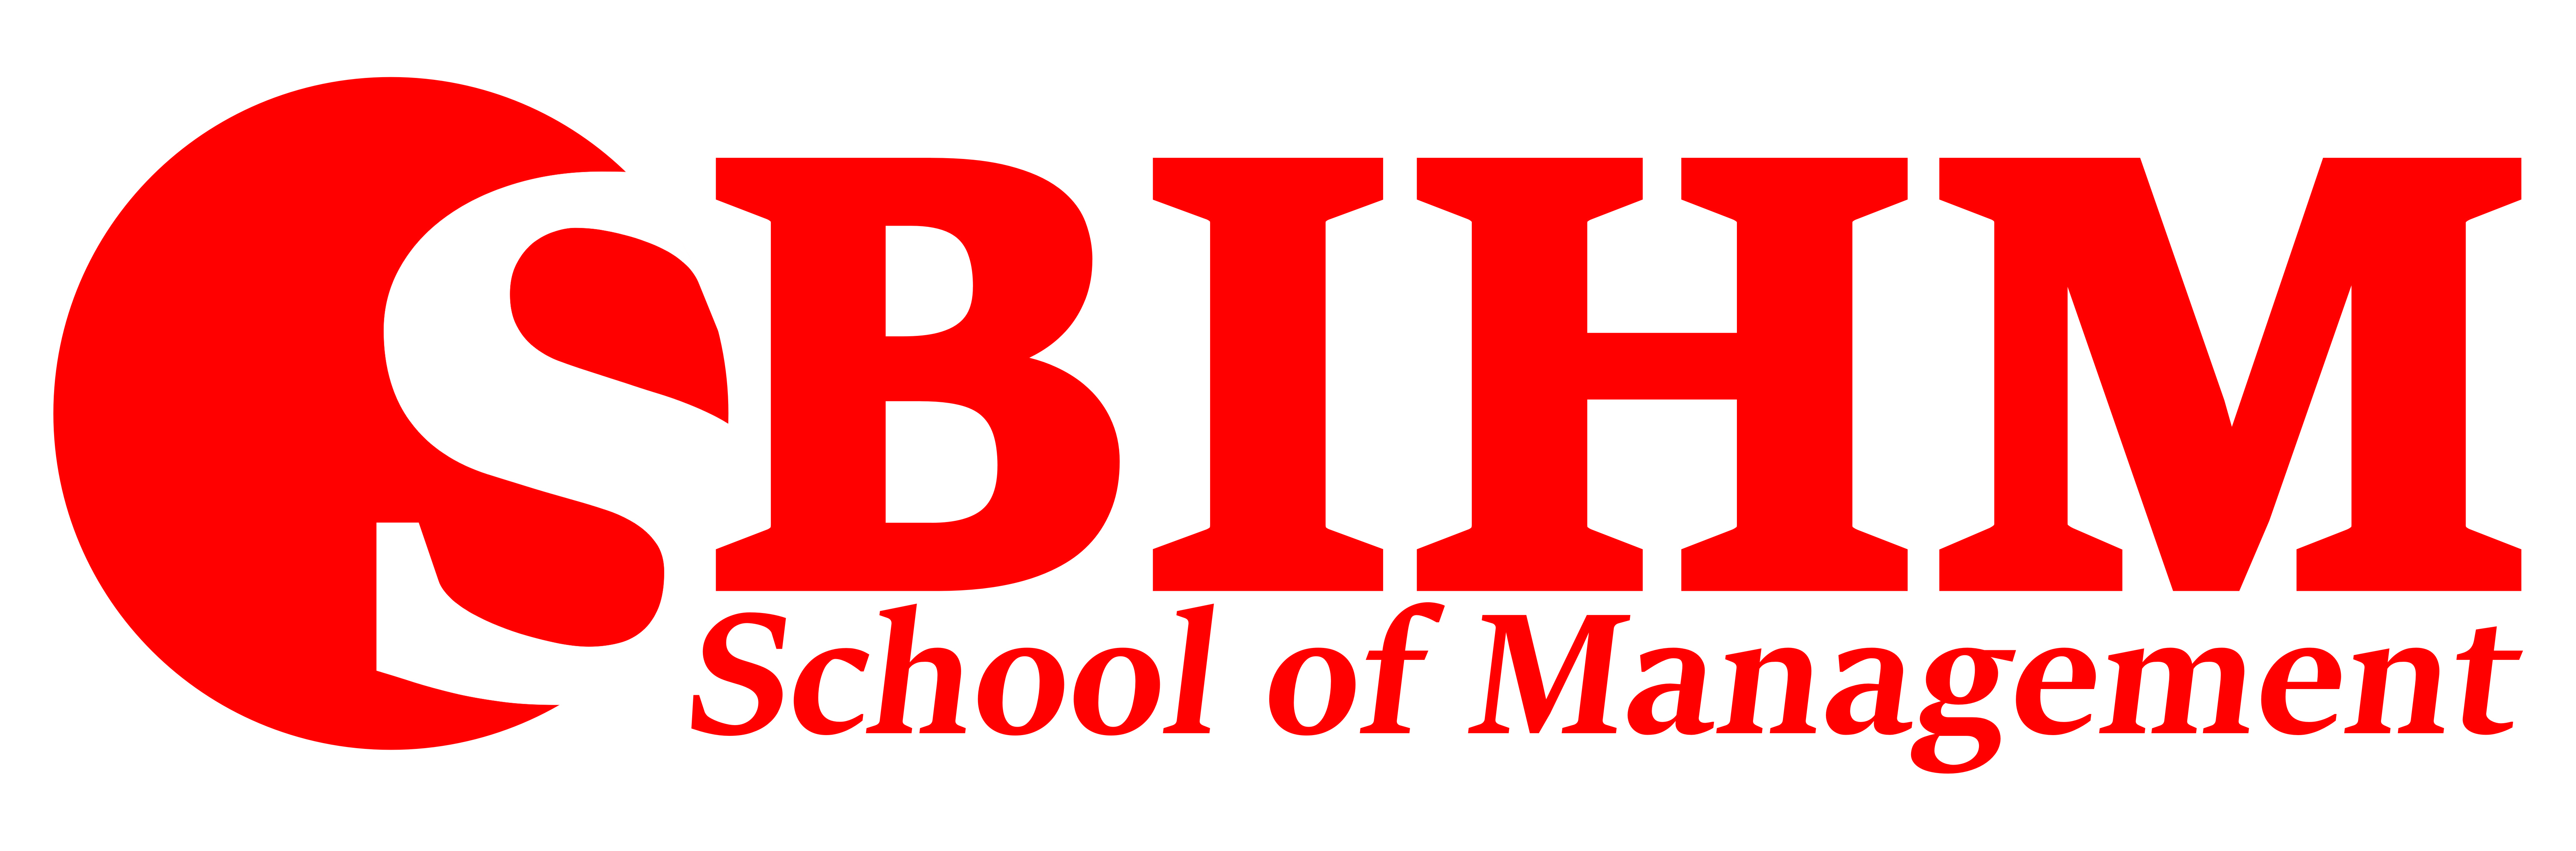 Best management institutes in Kolkata – SBIHMIT